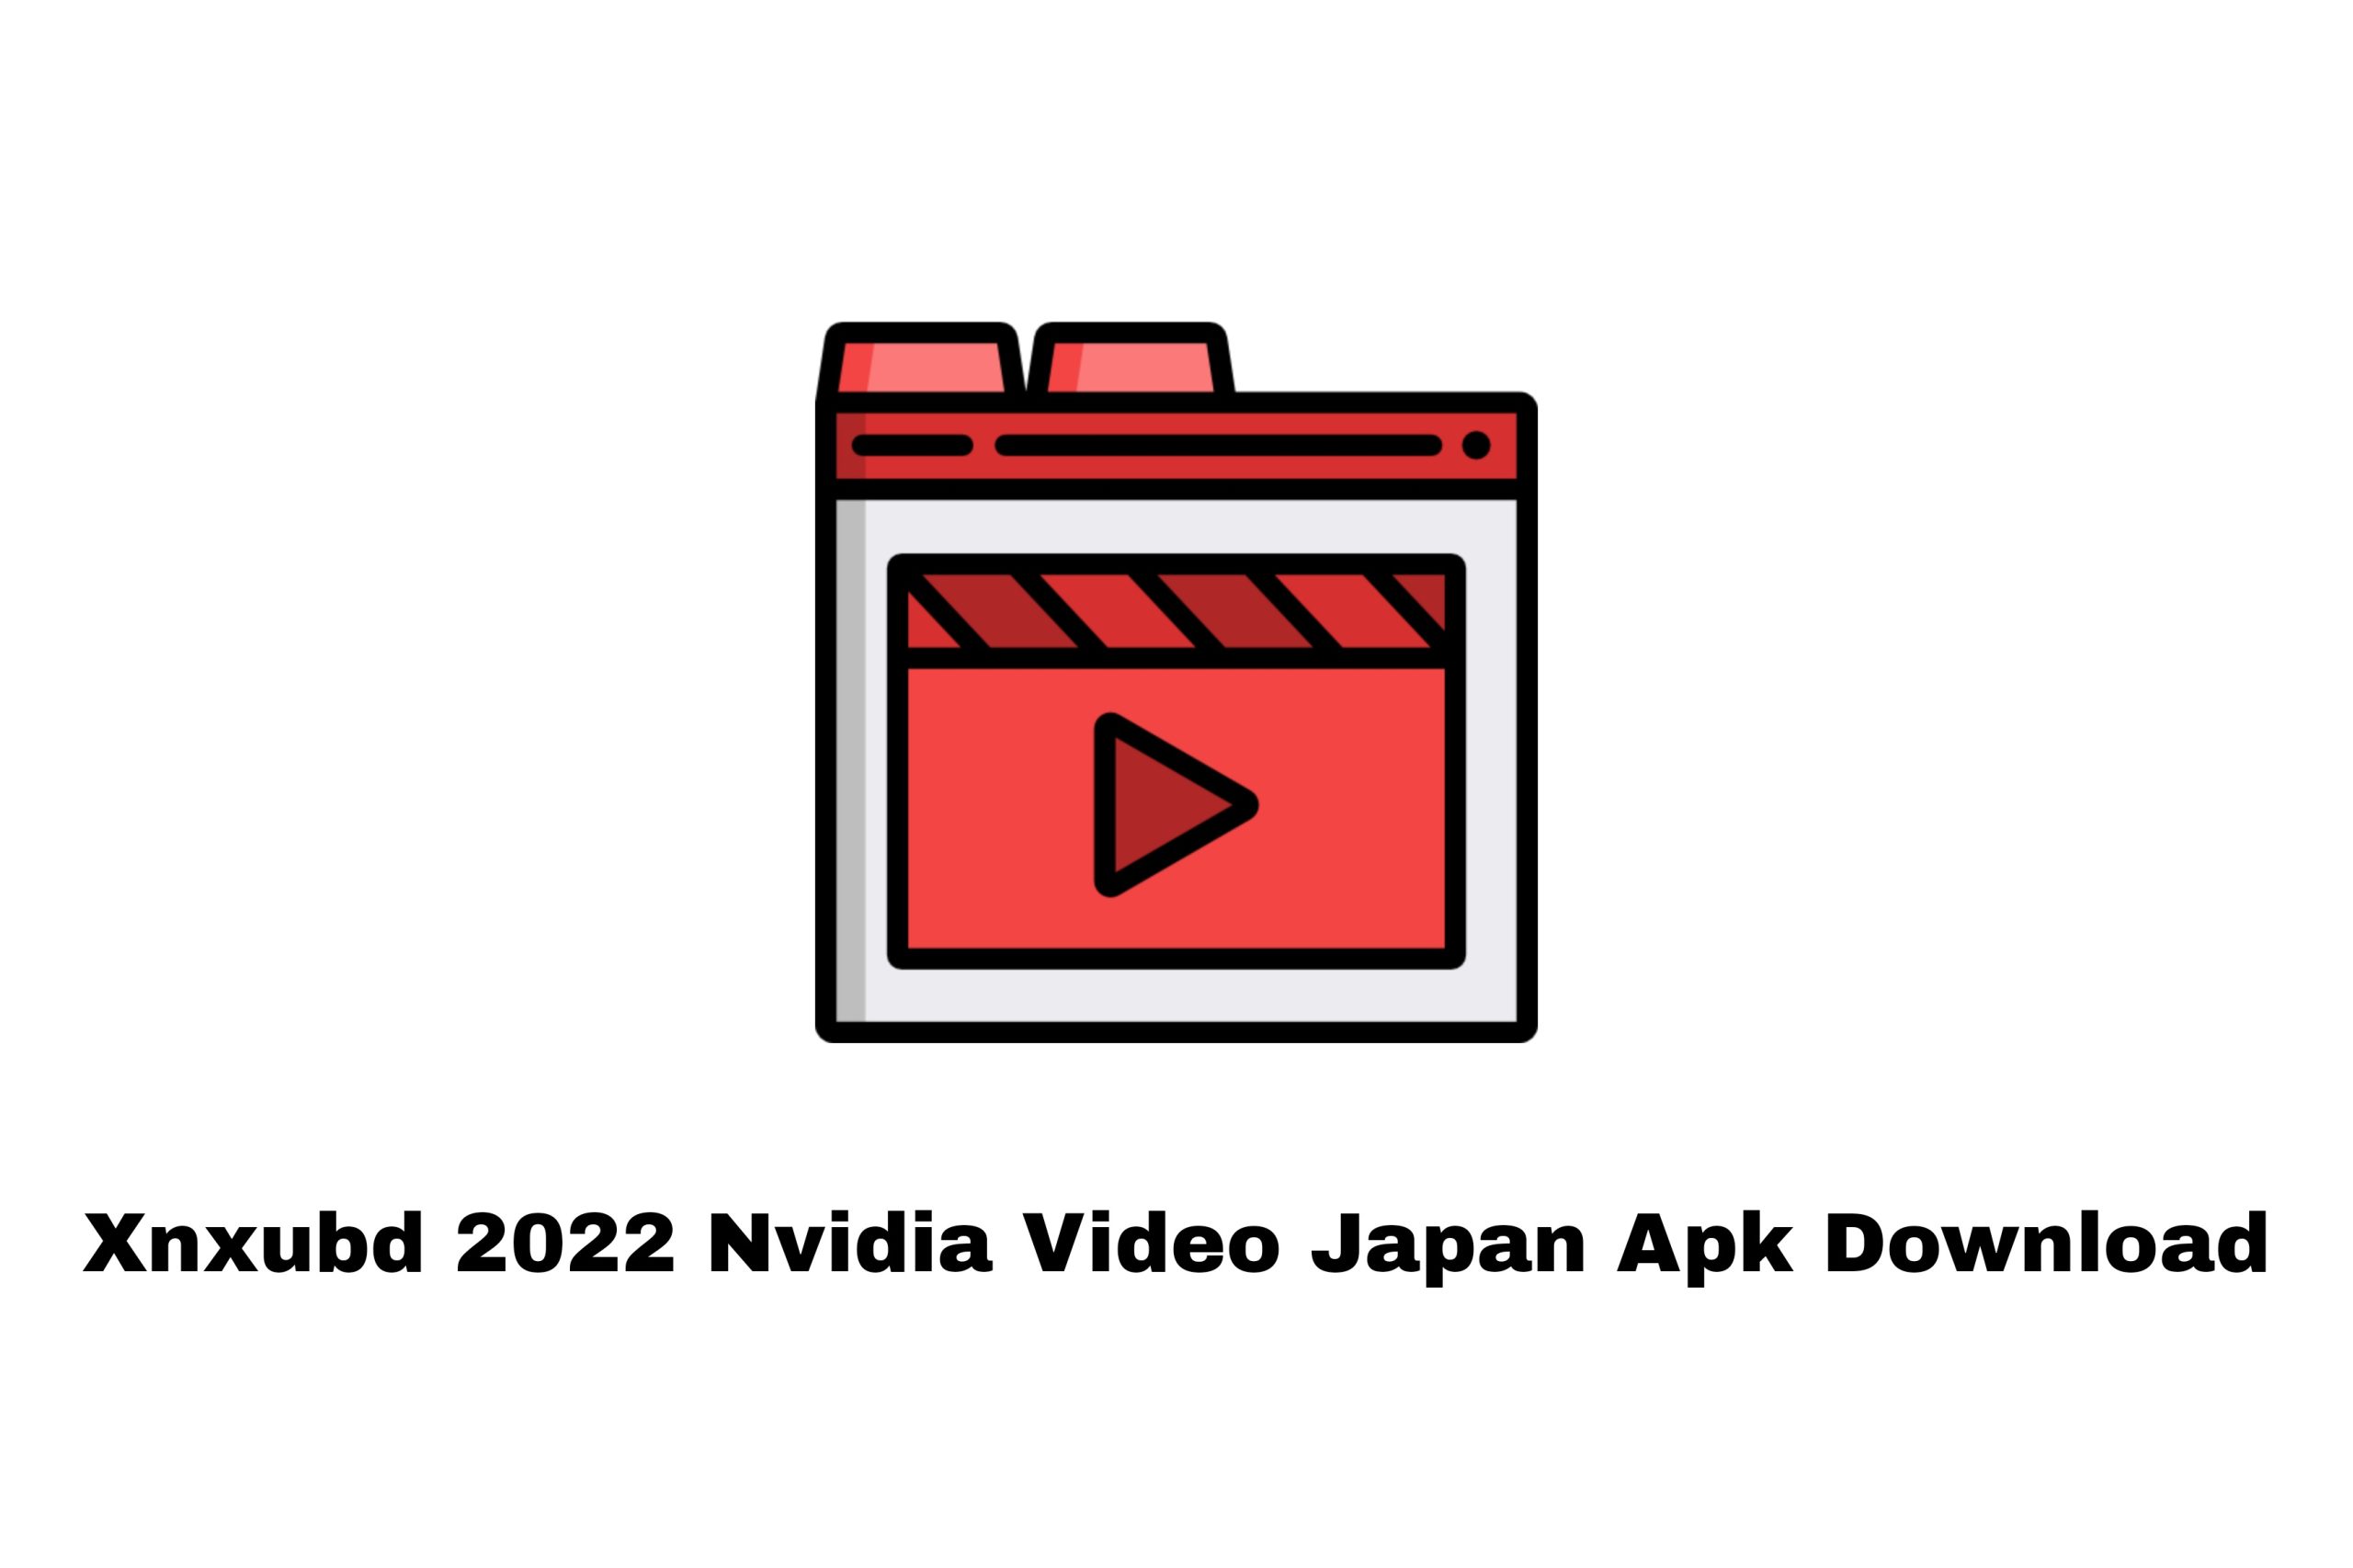 Xnxubd 2022 Nvidia Video Japan Apk Download